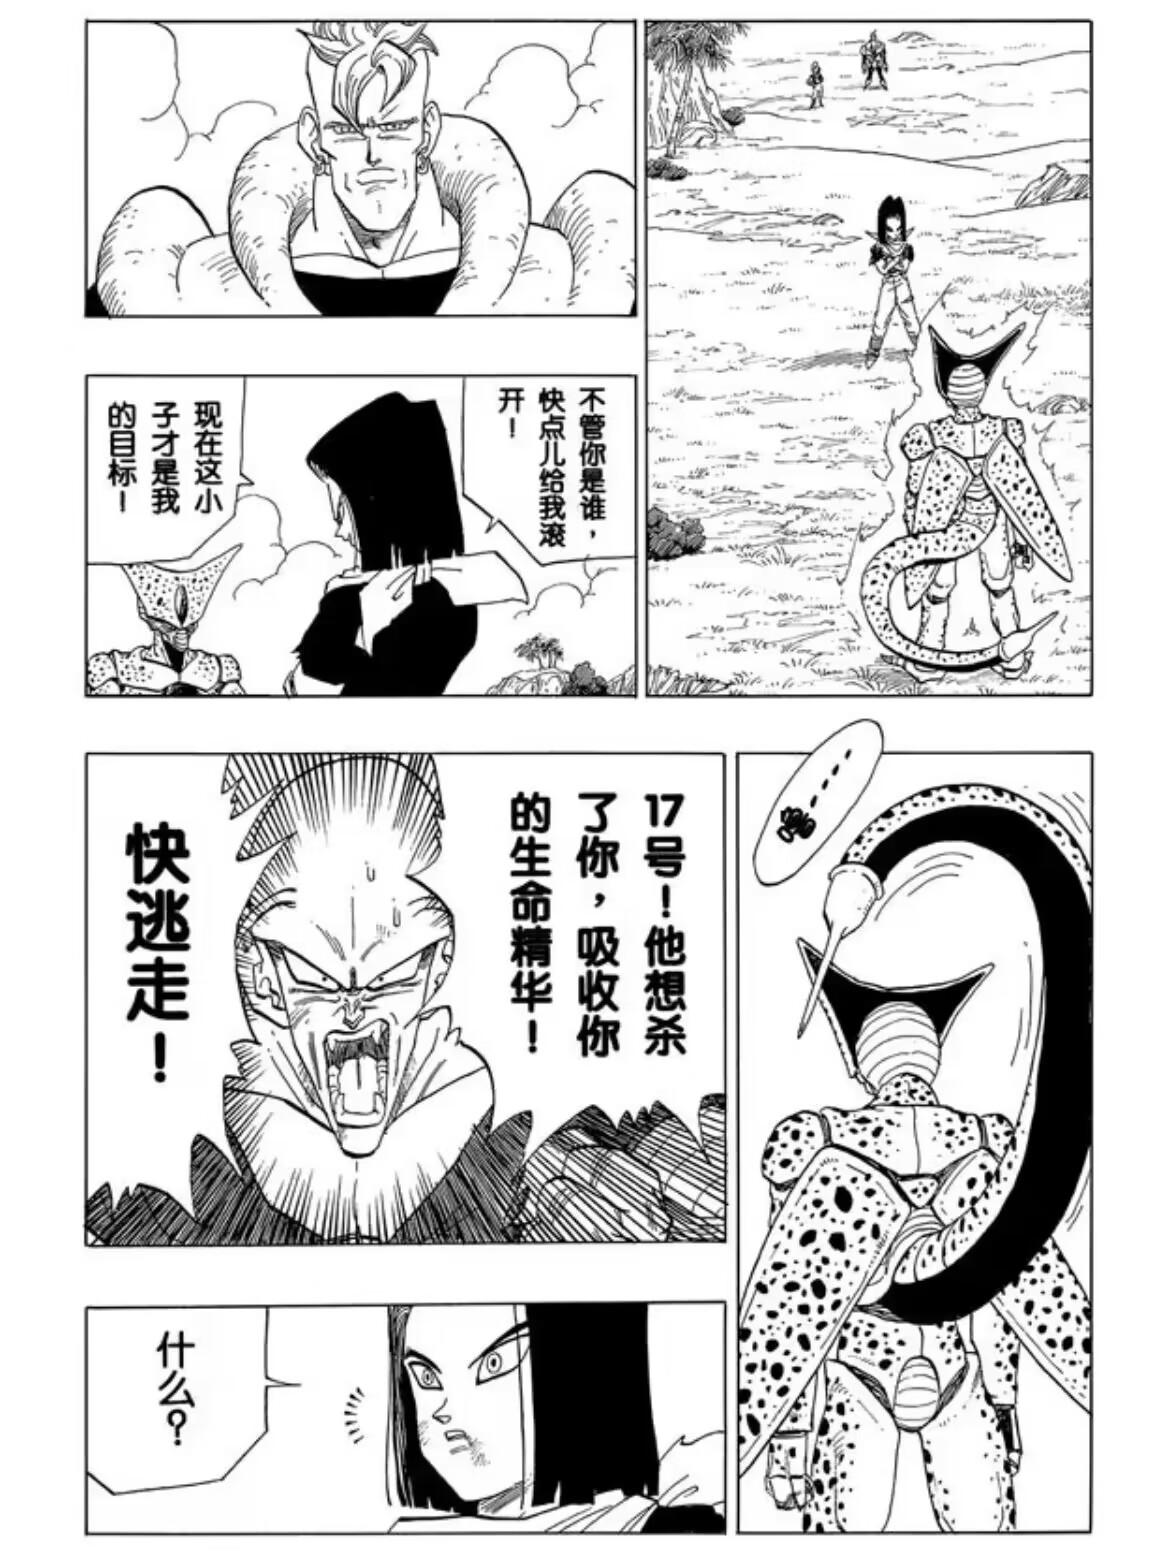 【同人漫画】沙鲁VS邪念波 & 沙鲁获胜的世界 - 哔哩哔哩